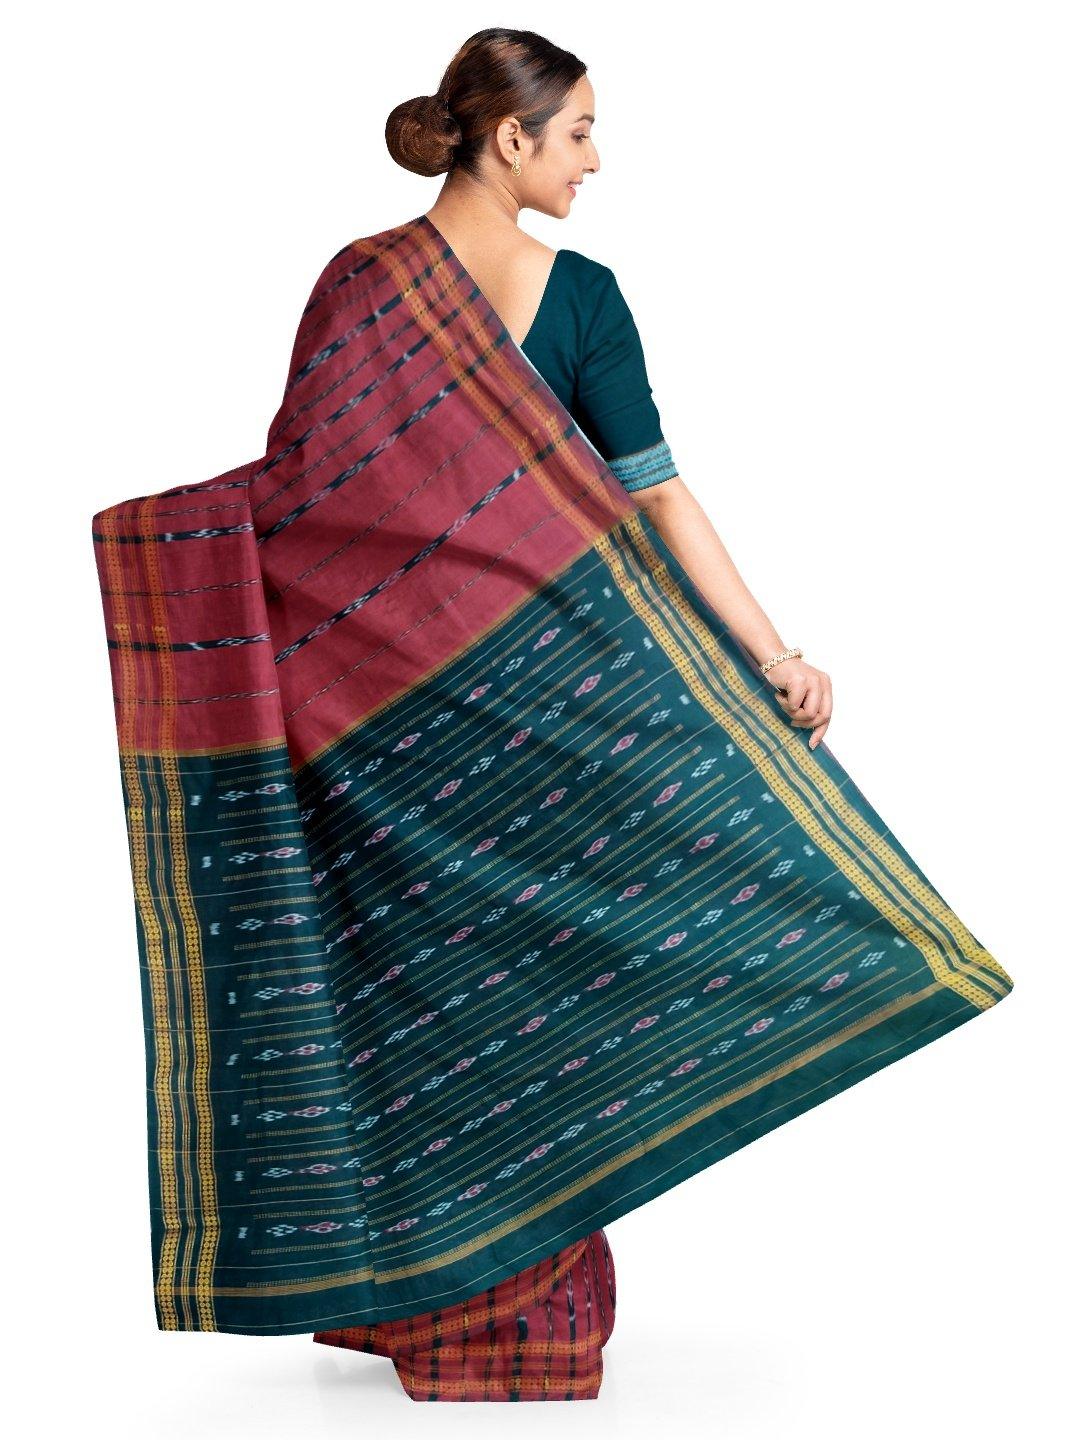 Maroon Cotton Sambalpuri Saree with matching Sambalpuri Blouse - Crafts Collection